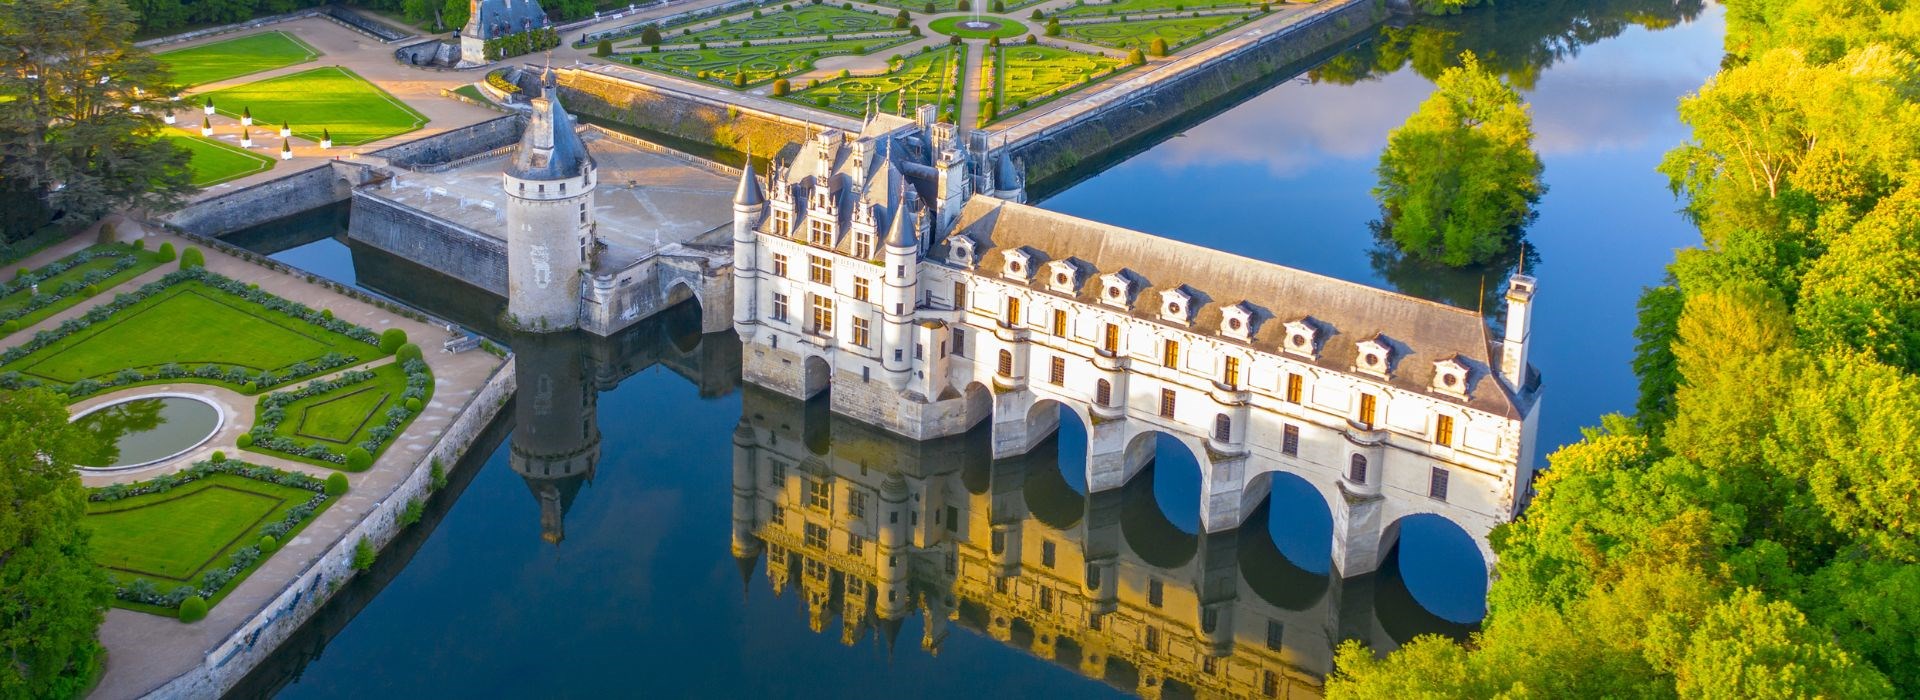 Visiter Le Château de Chenonceau - Pays de la Loire